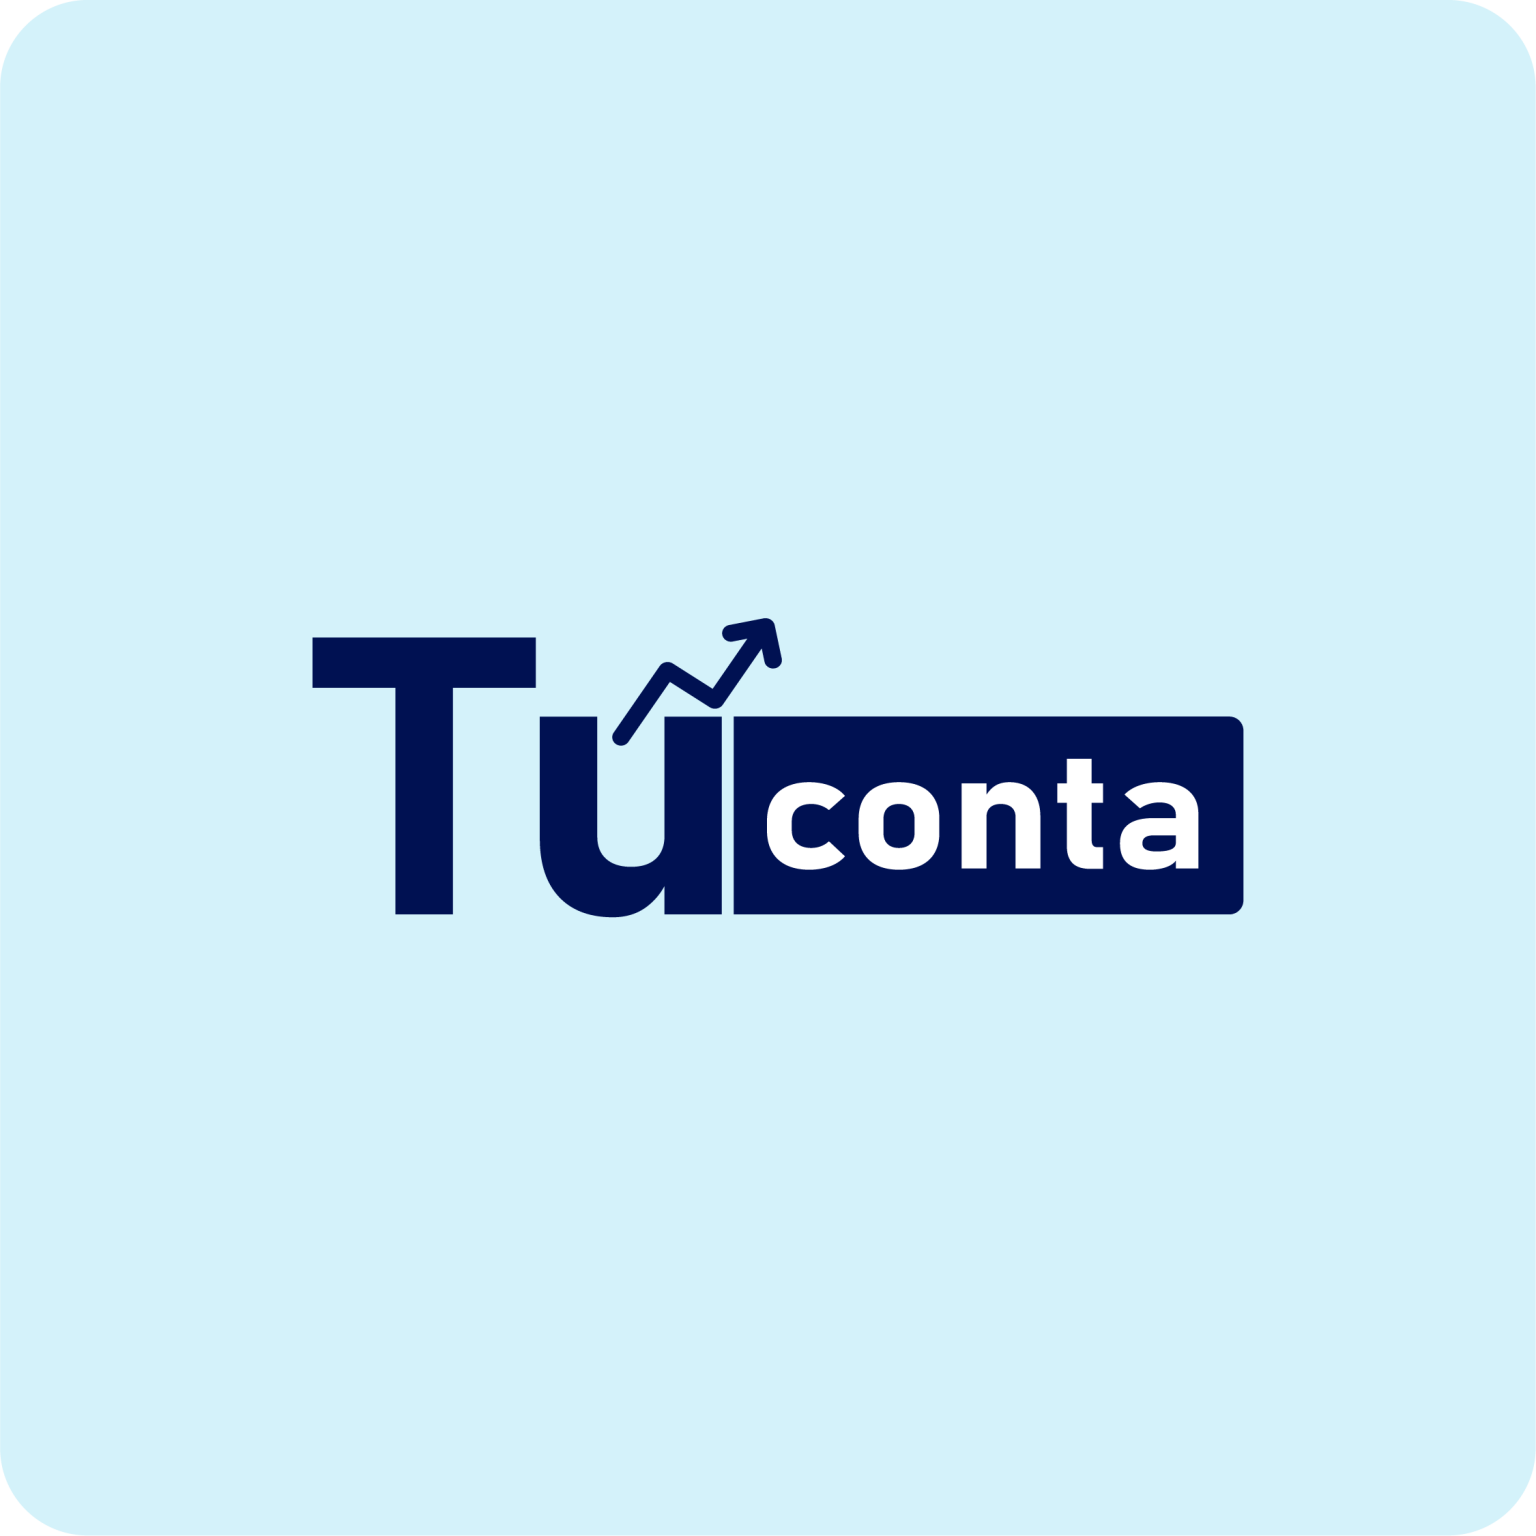 www.tuconta.com.gt